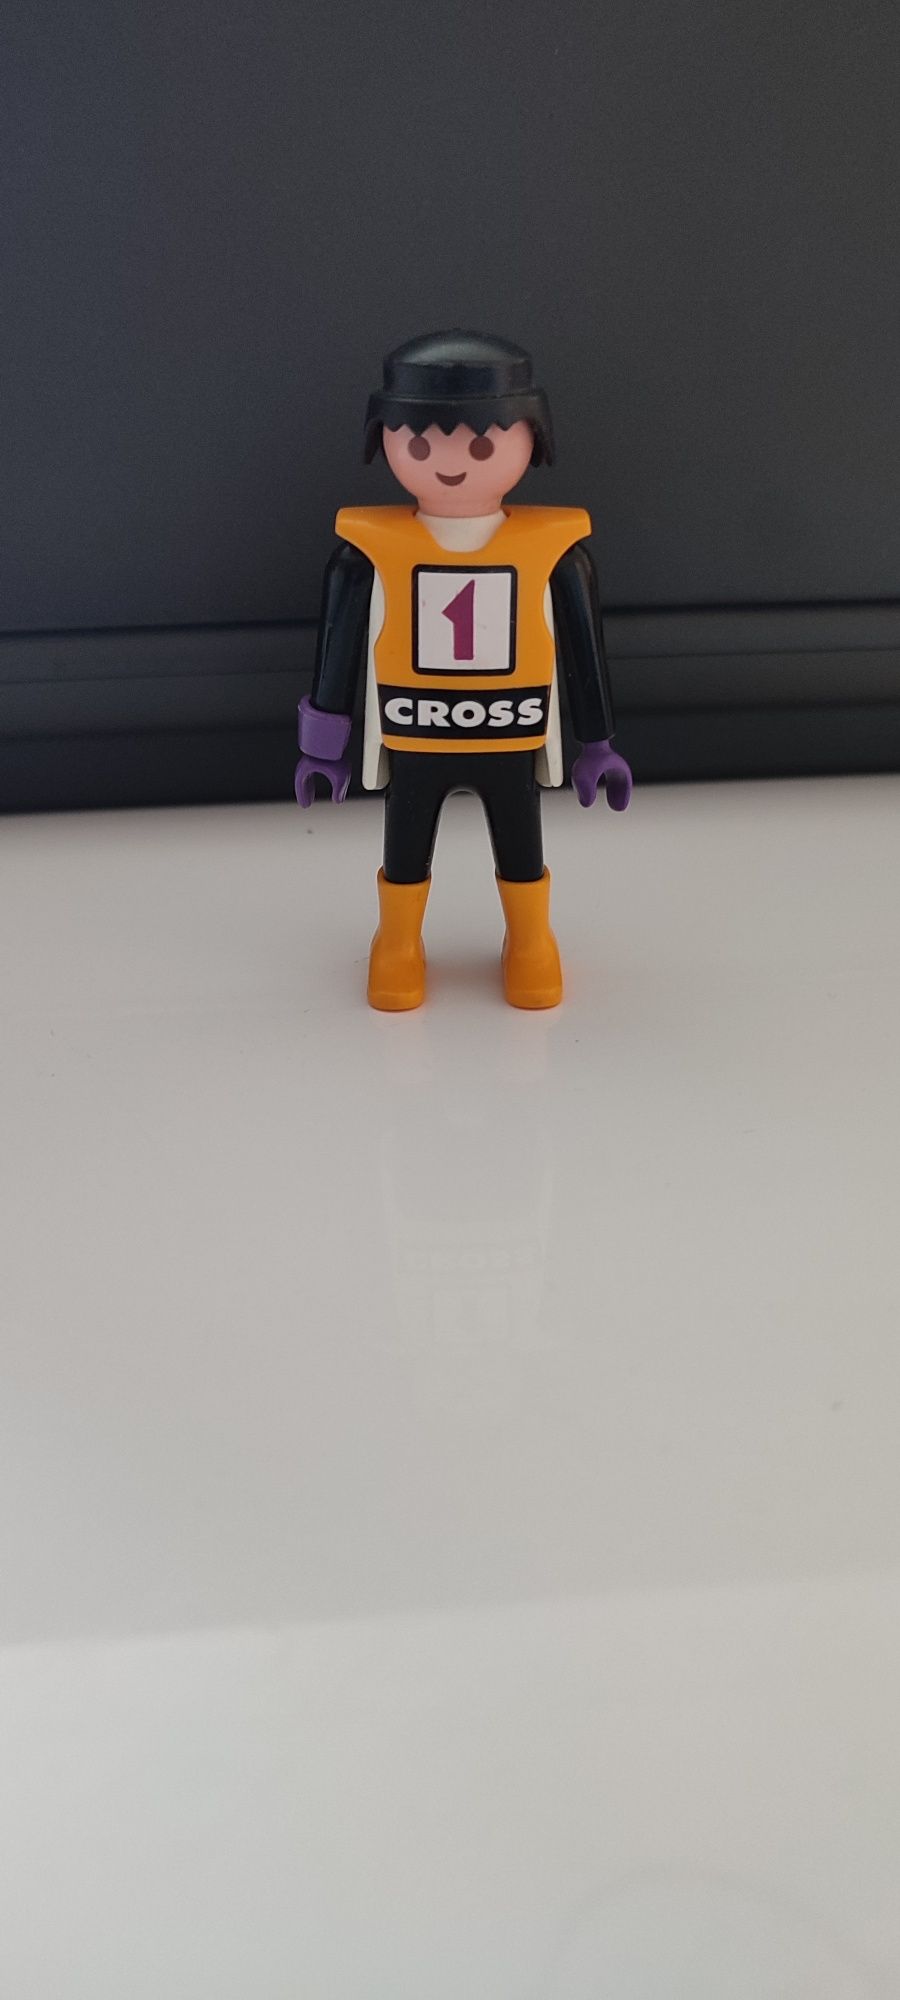 Playmobil figurka cross 1